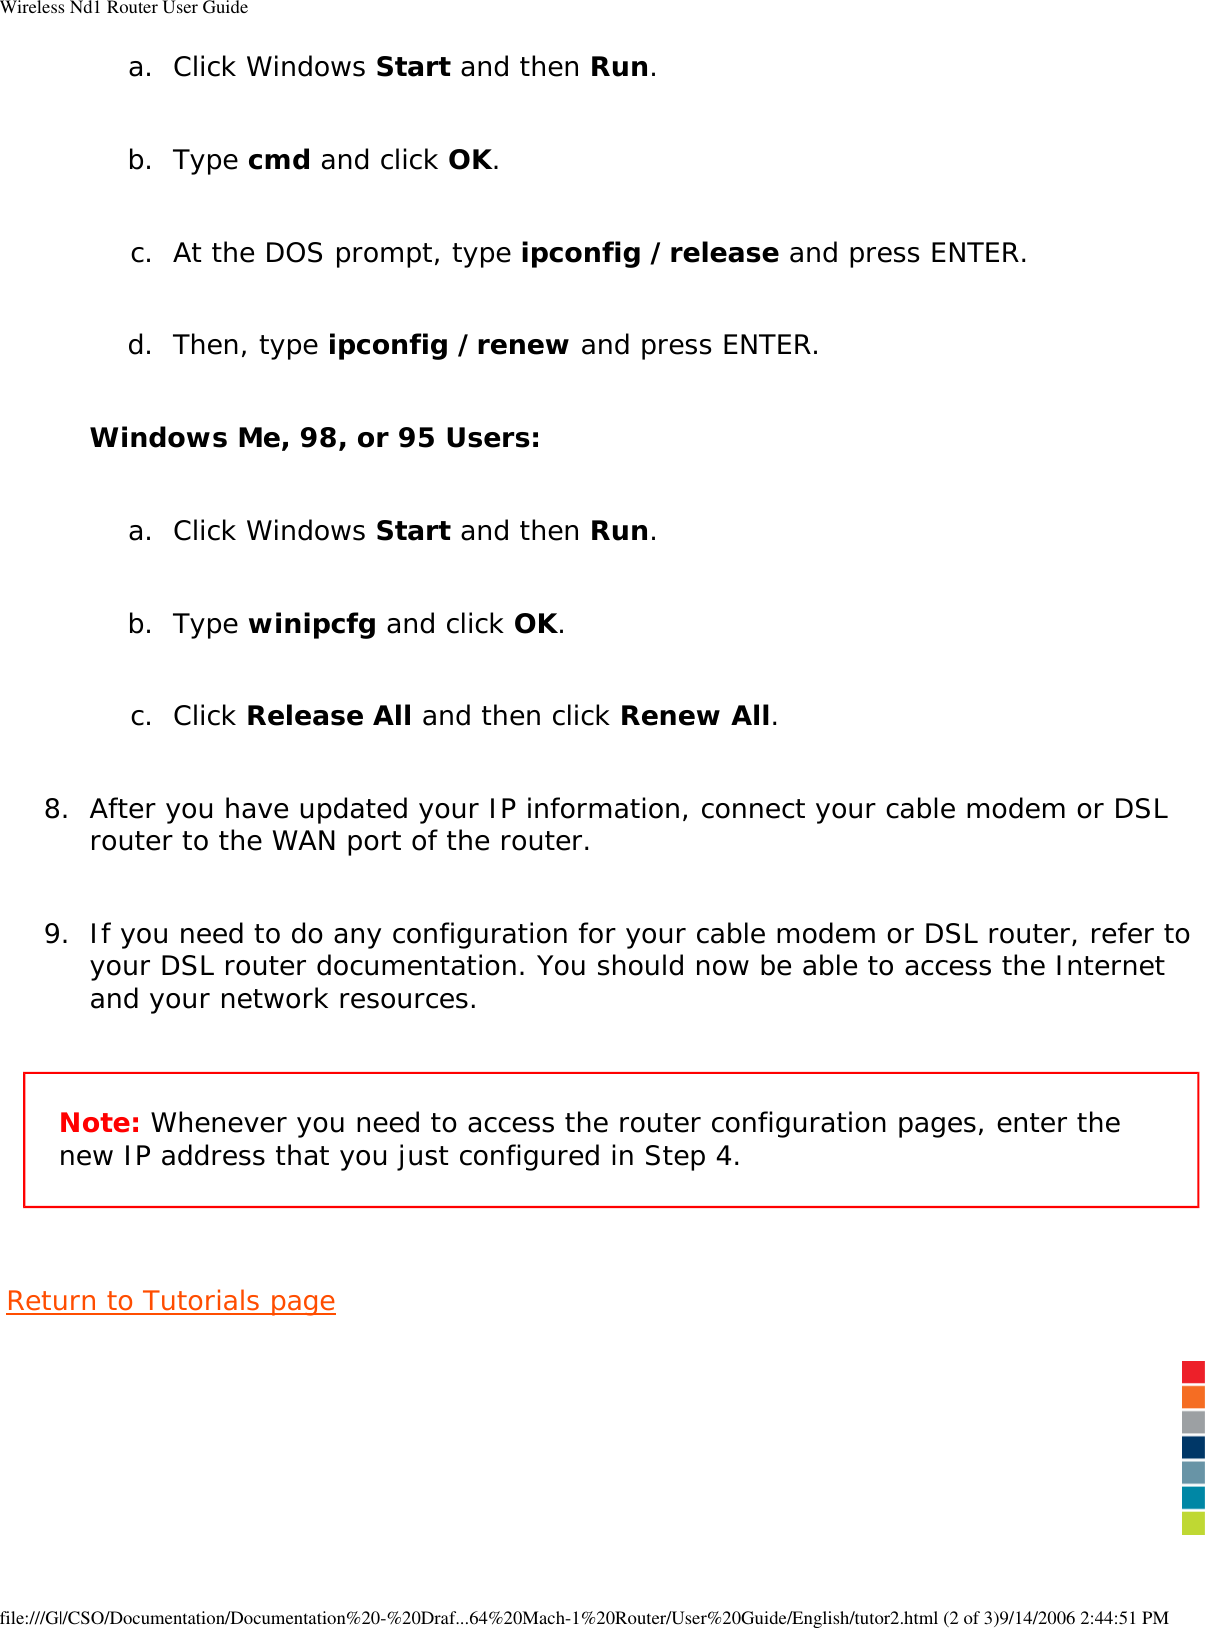 Page 12 of GemTek Technology R950630GN USRobotics Wireless Nd1 Router User Manual Wireless Nd1 Router User Guide